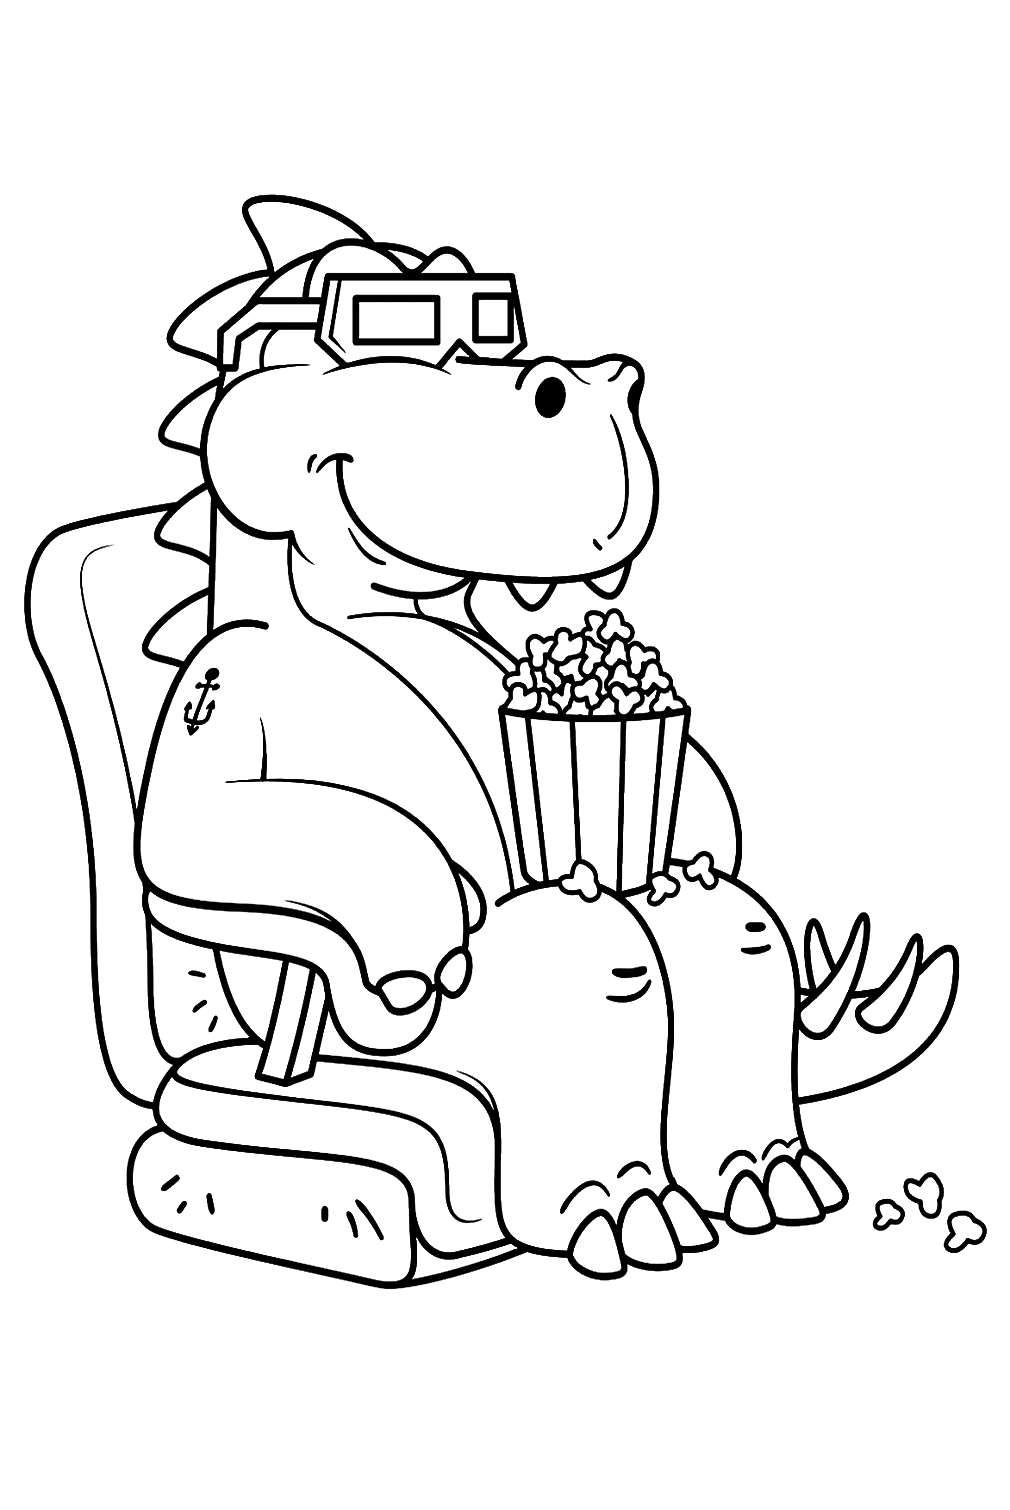 Página para colorir de dinossauro e pipoca da Popcorn